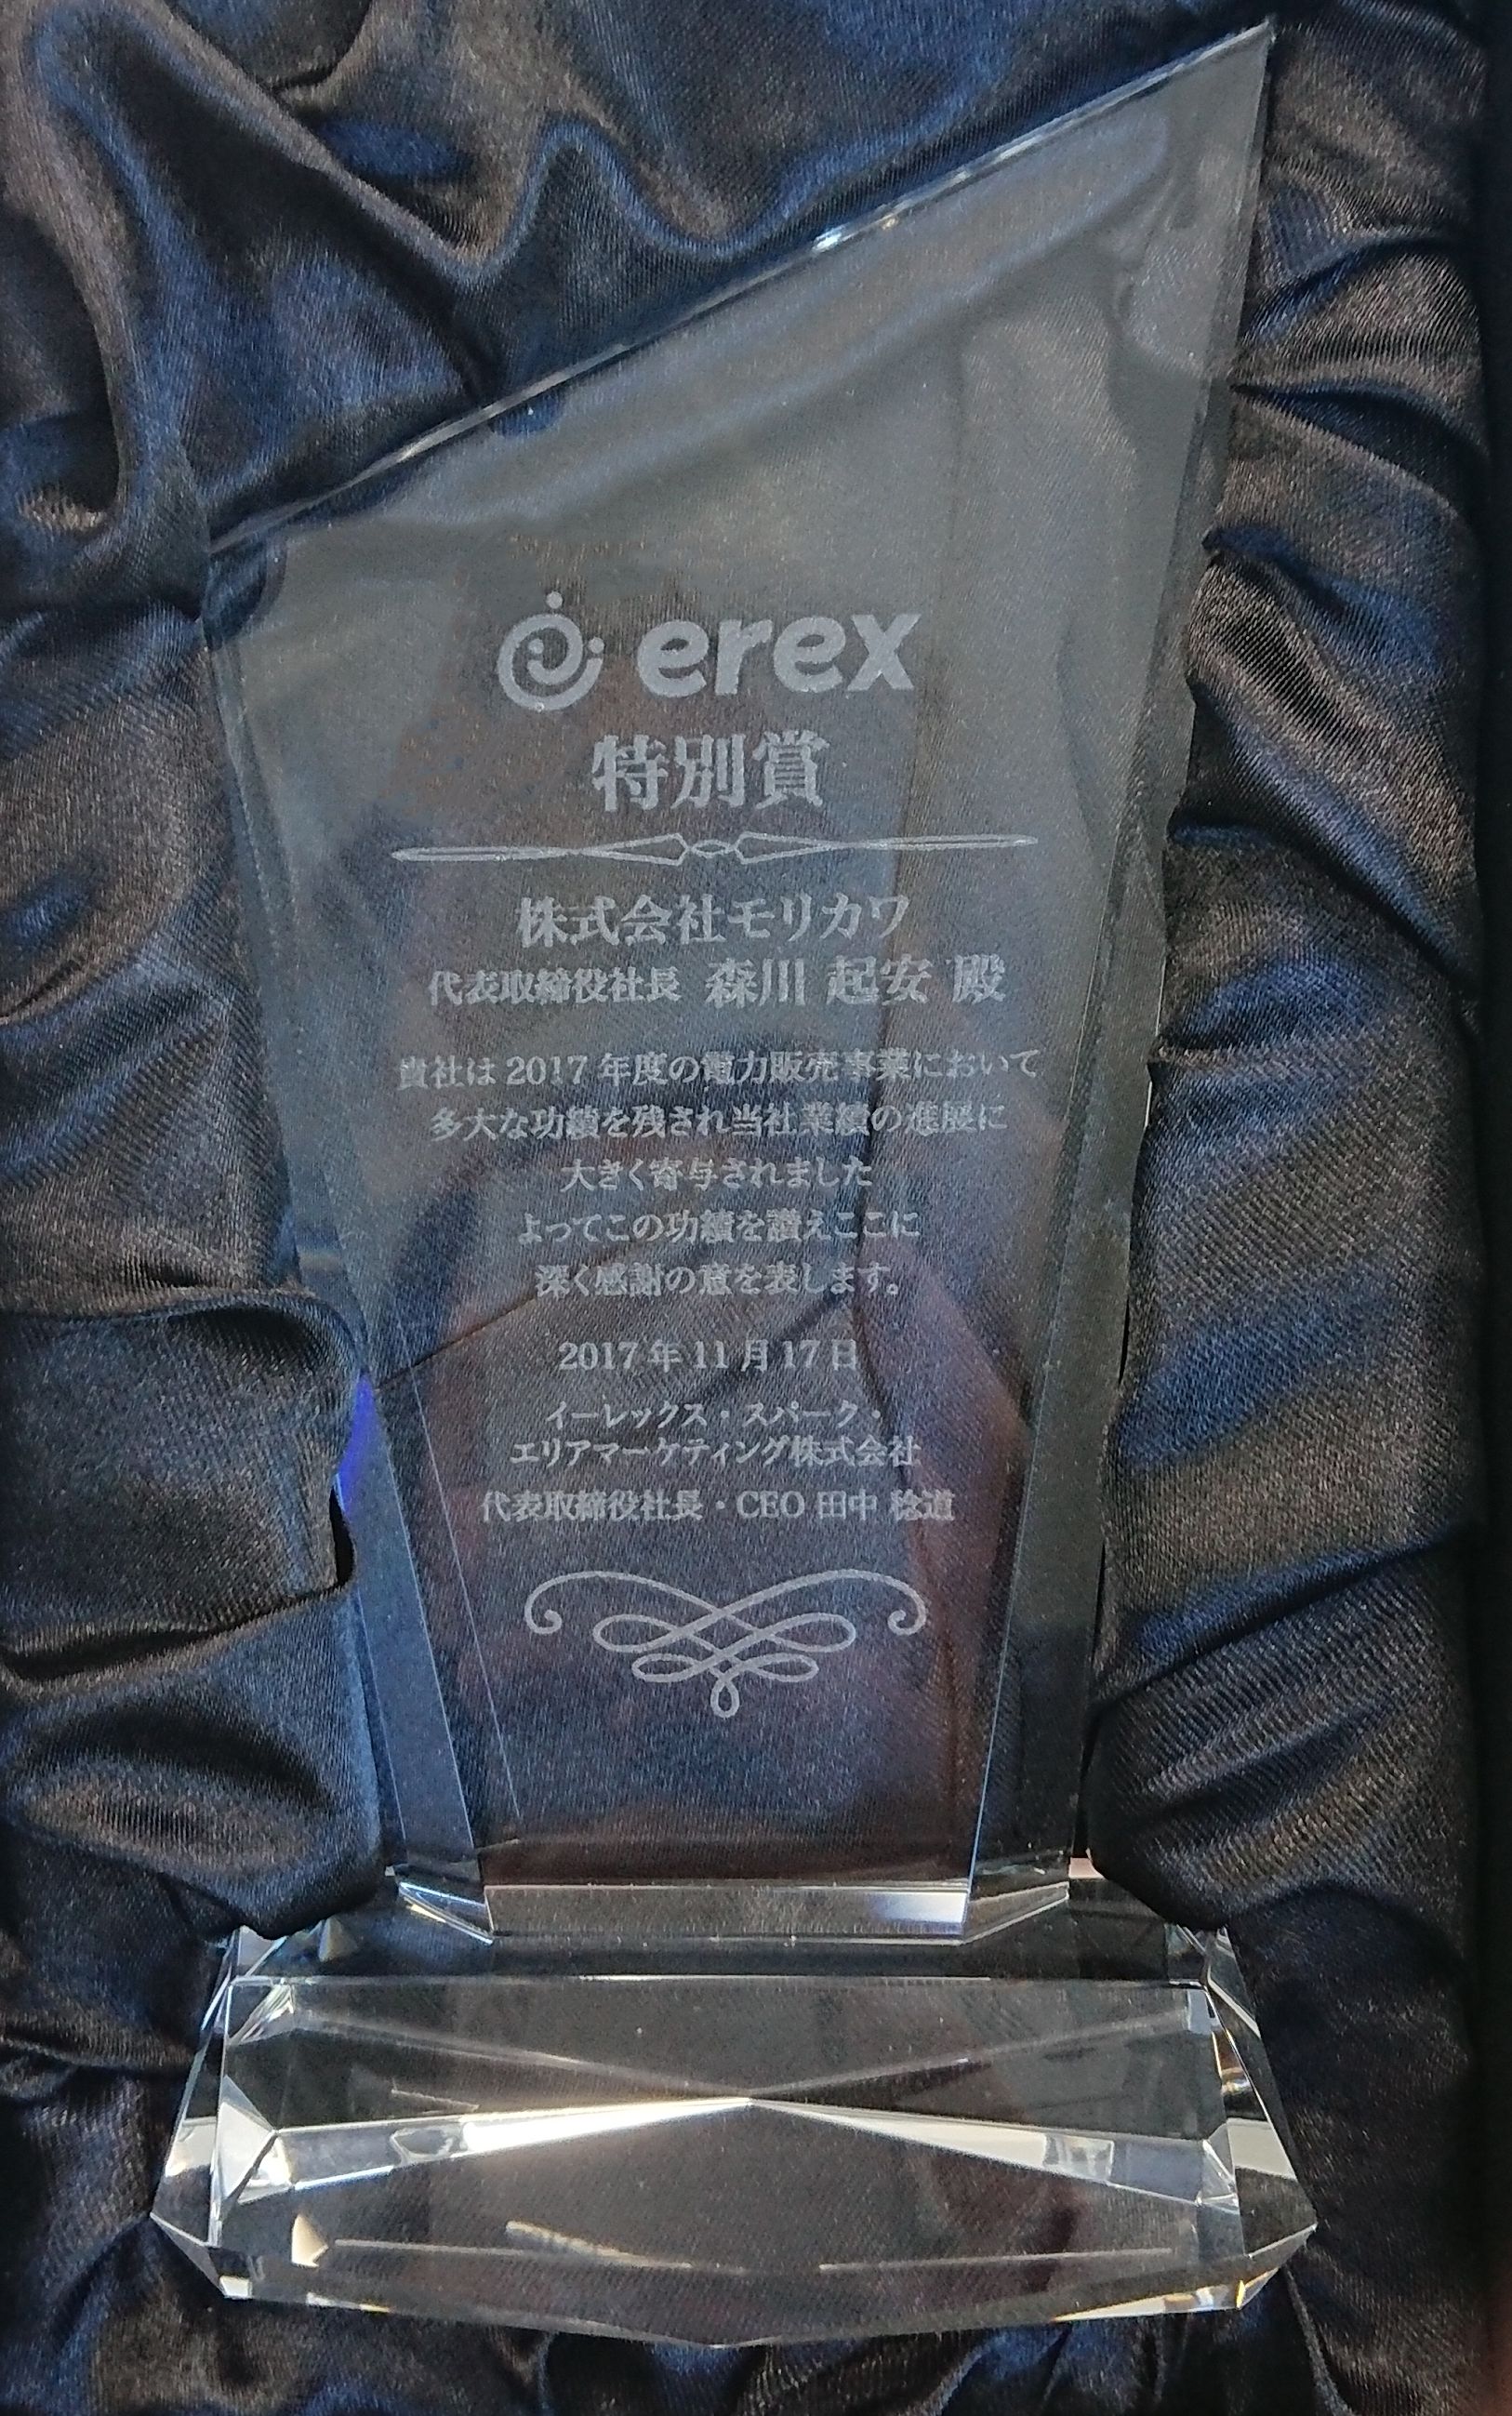 イーレックスより電力販売実績により特別賞を受賞